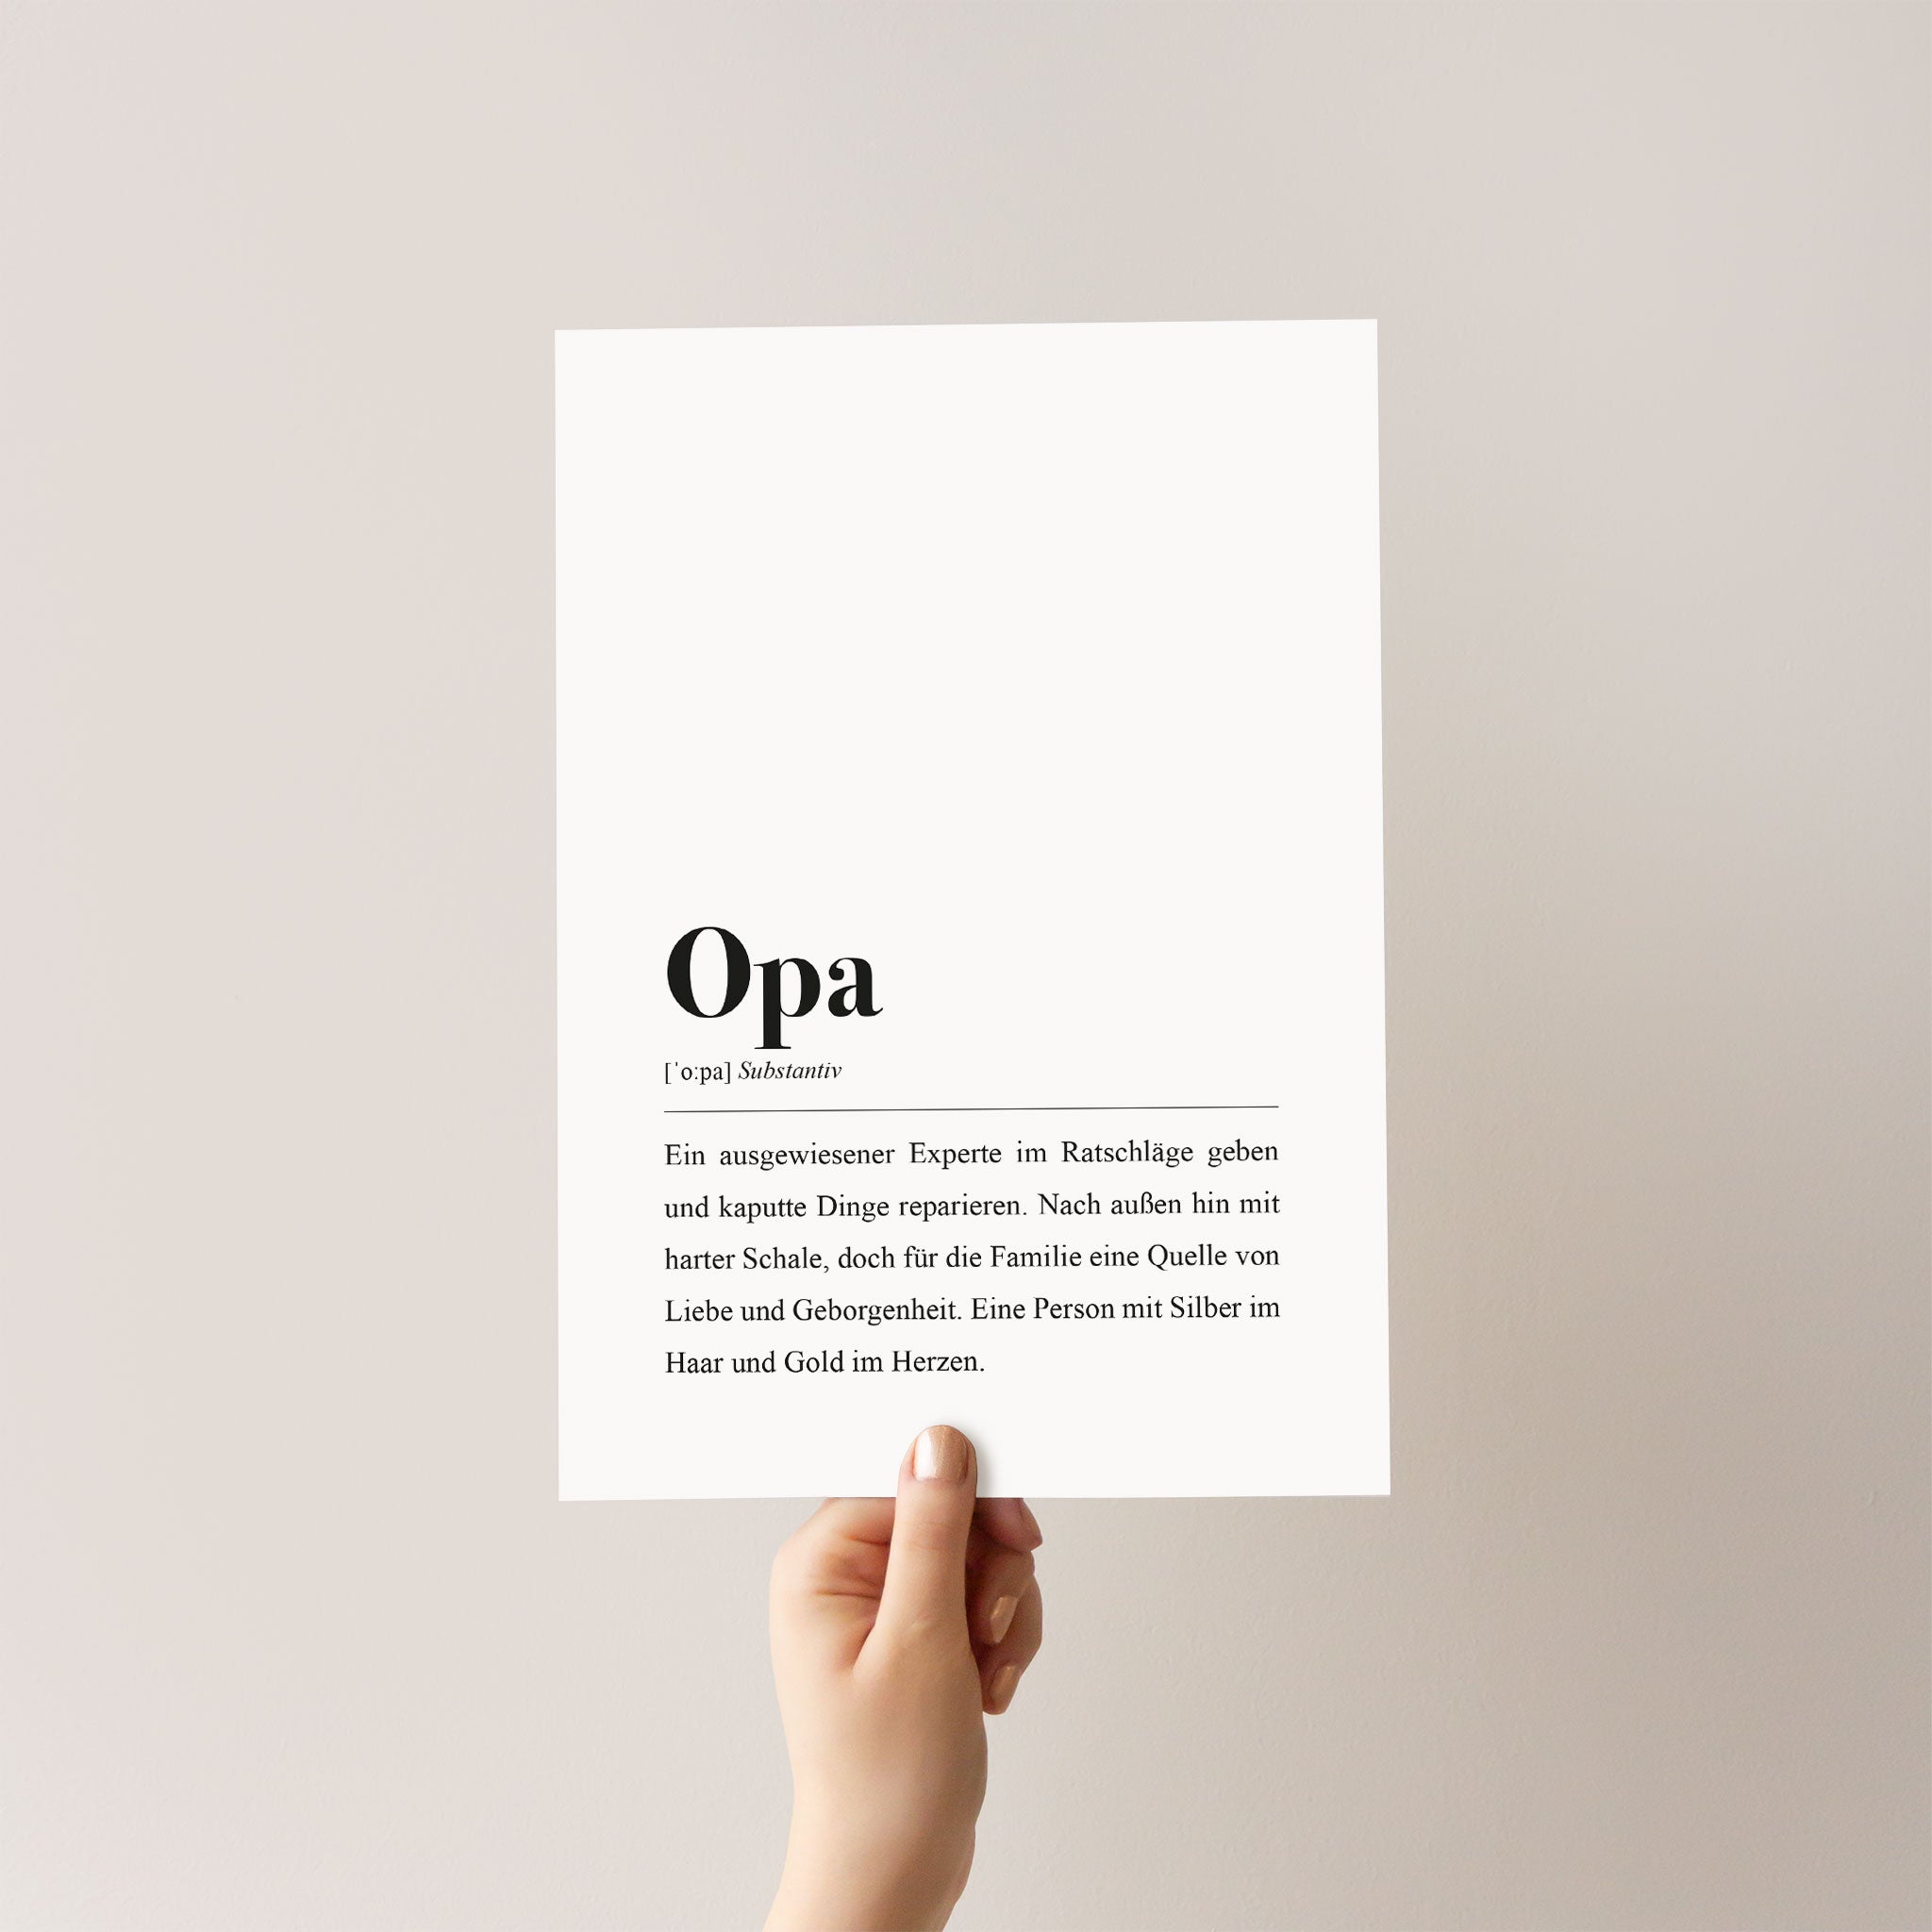 Geschenkidee für Opas: Plakat mit Worterklärung im Wörterbuch oder Duden-Stil